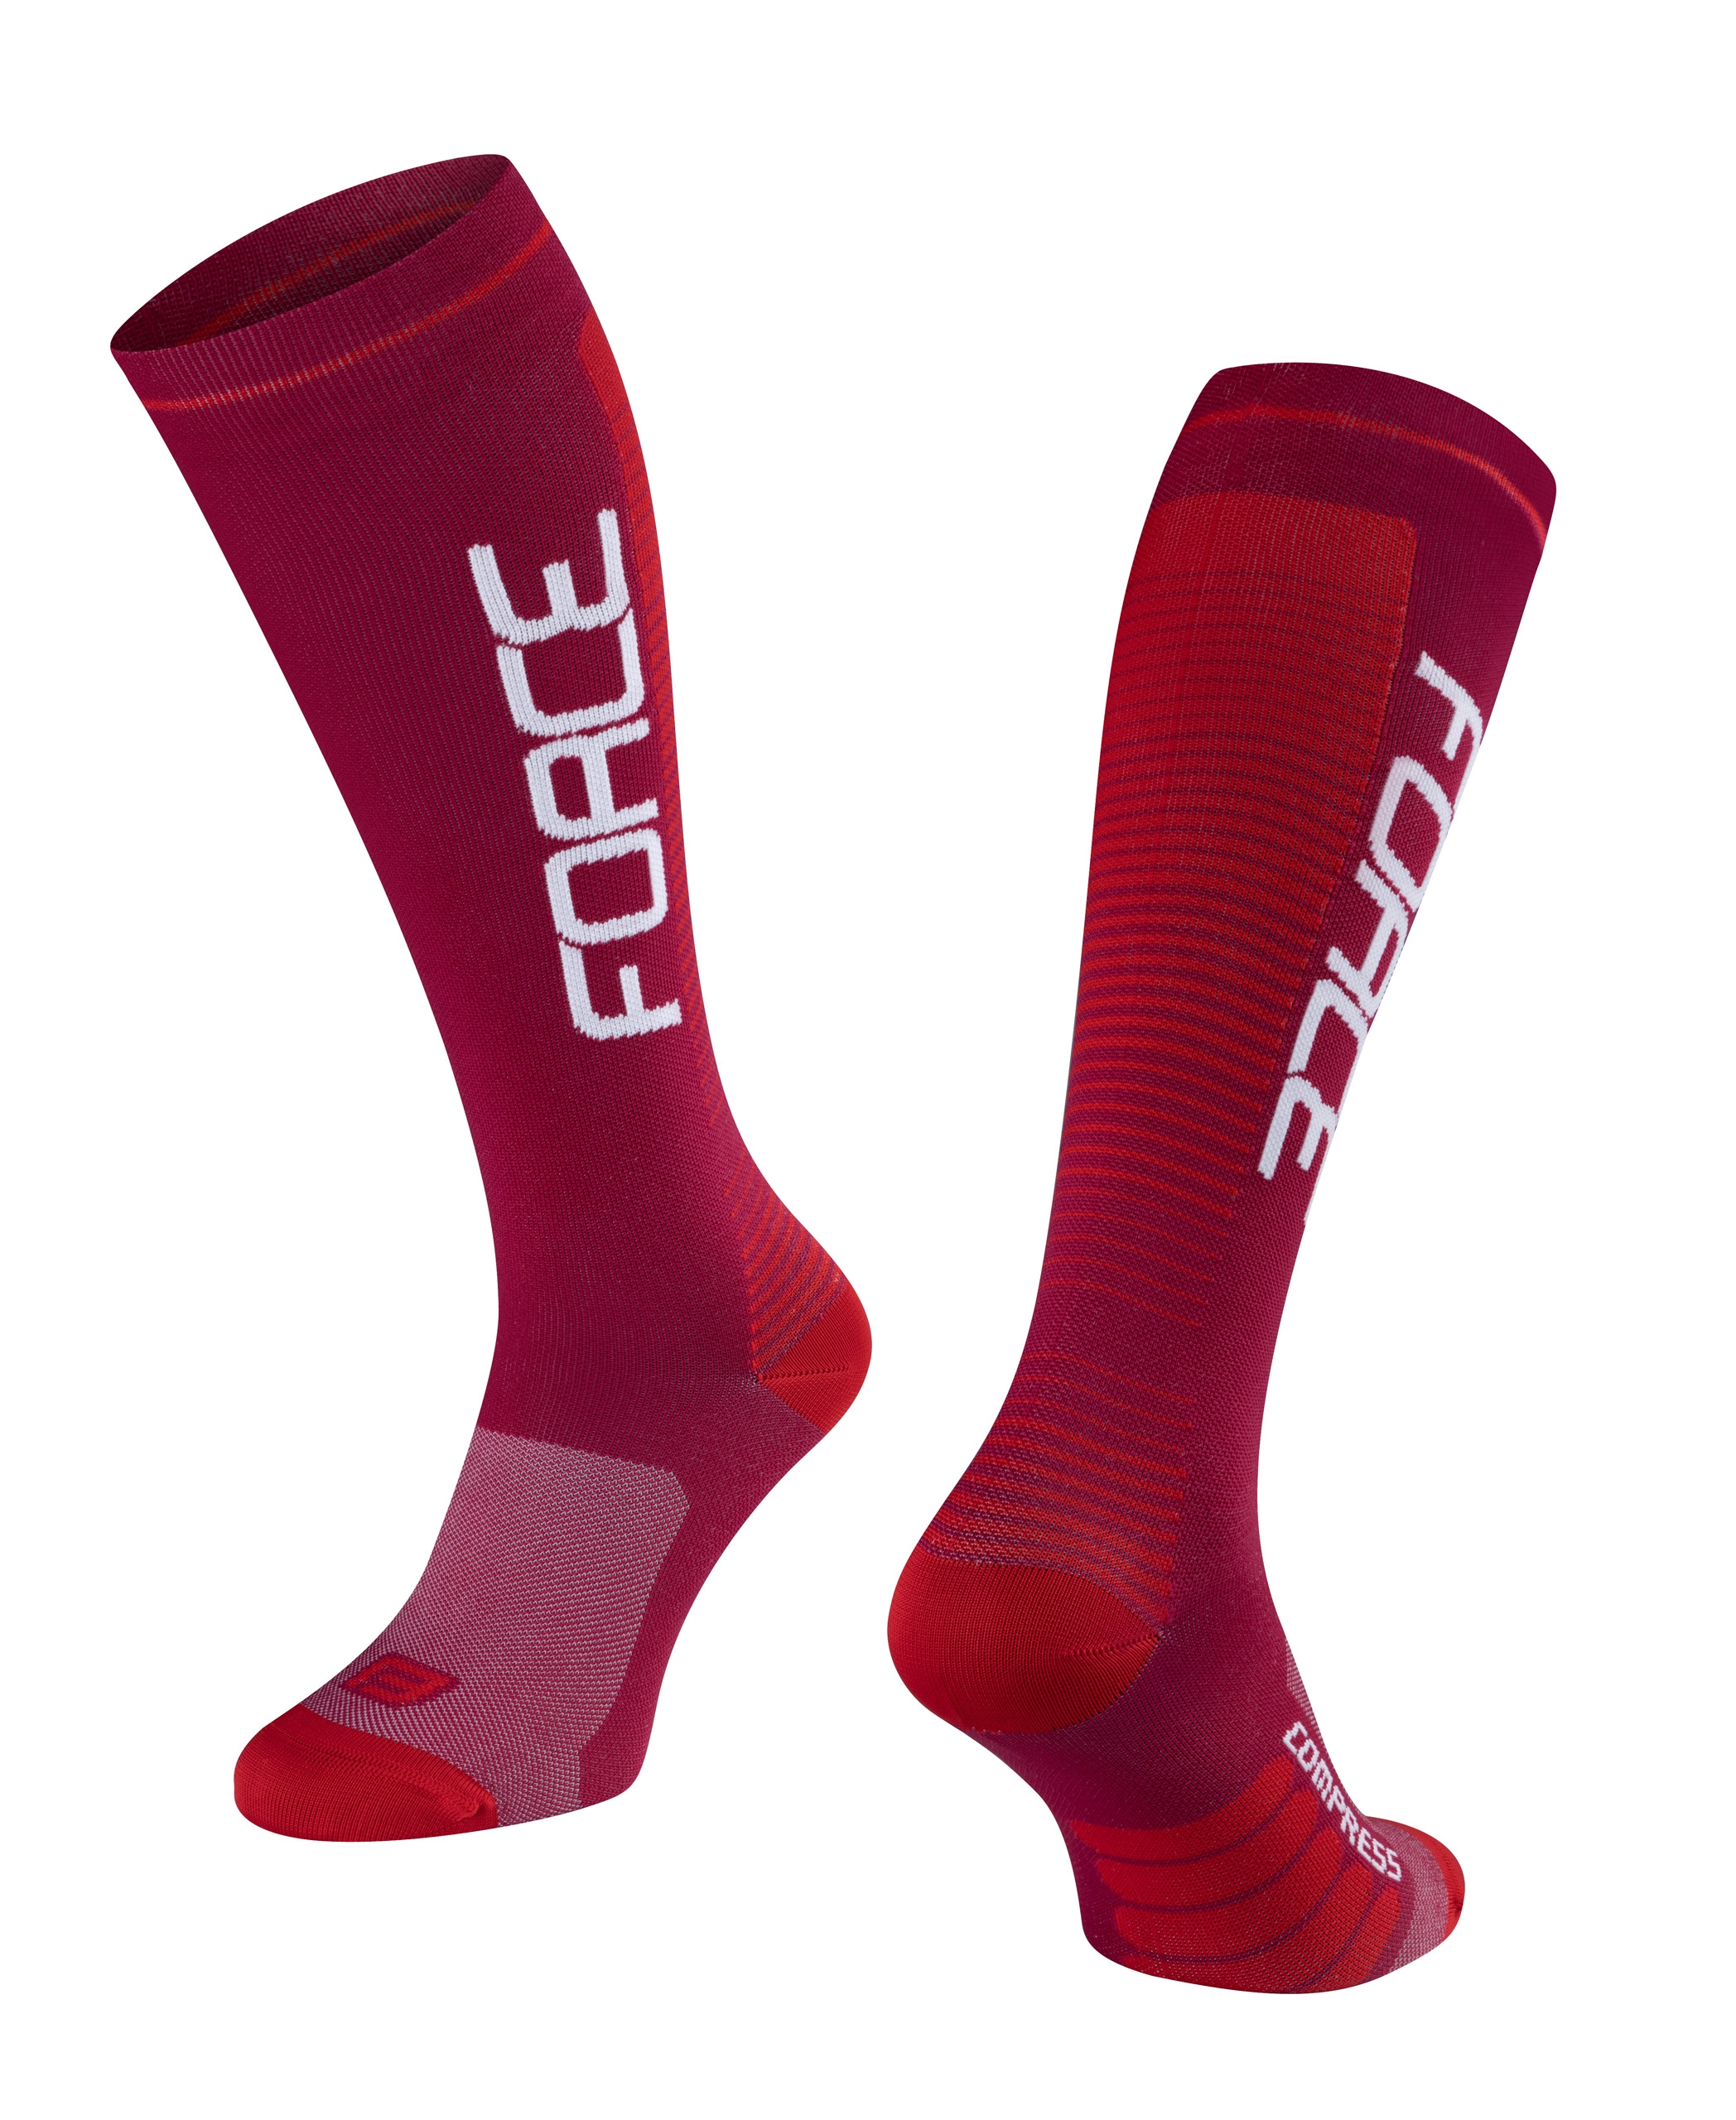 FORCE ponožky F COMPRESS, bordó-červené S-M/36-41 Velikost: L-XL